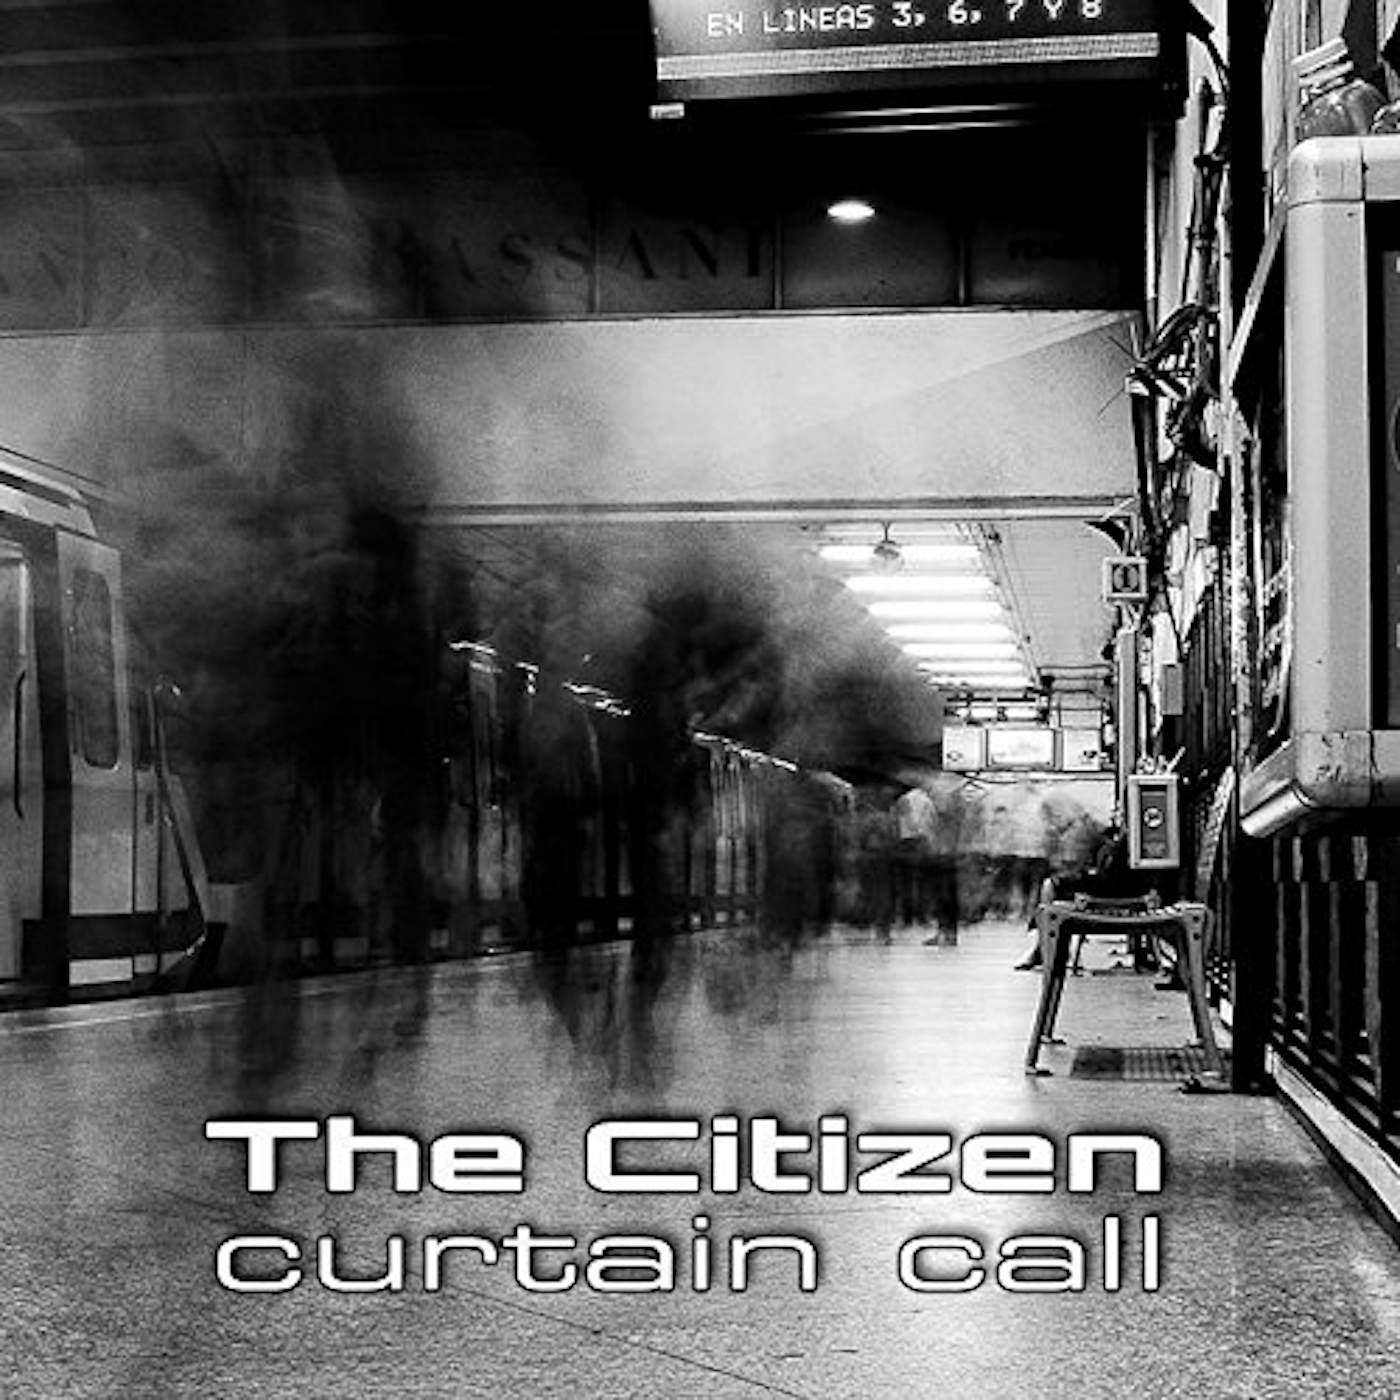 Citizen CURTAIN CALL CD